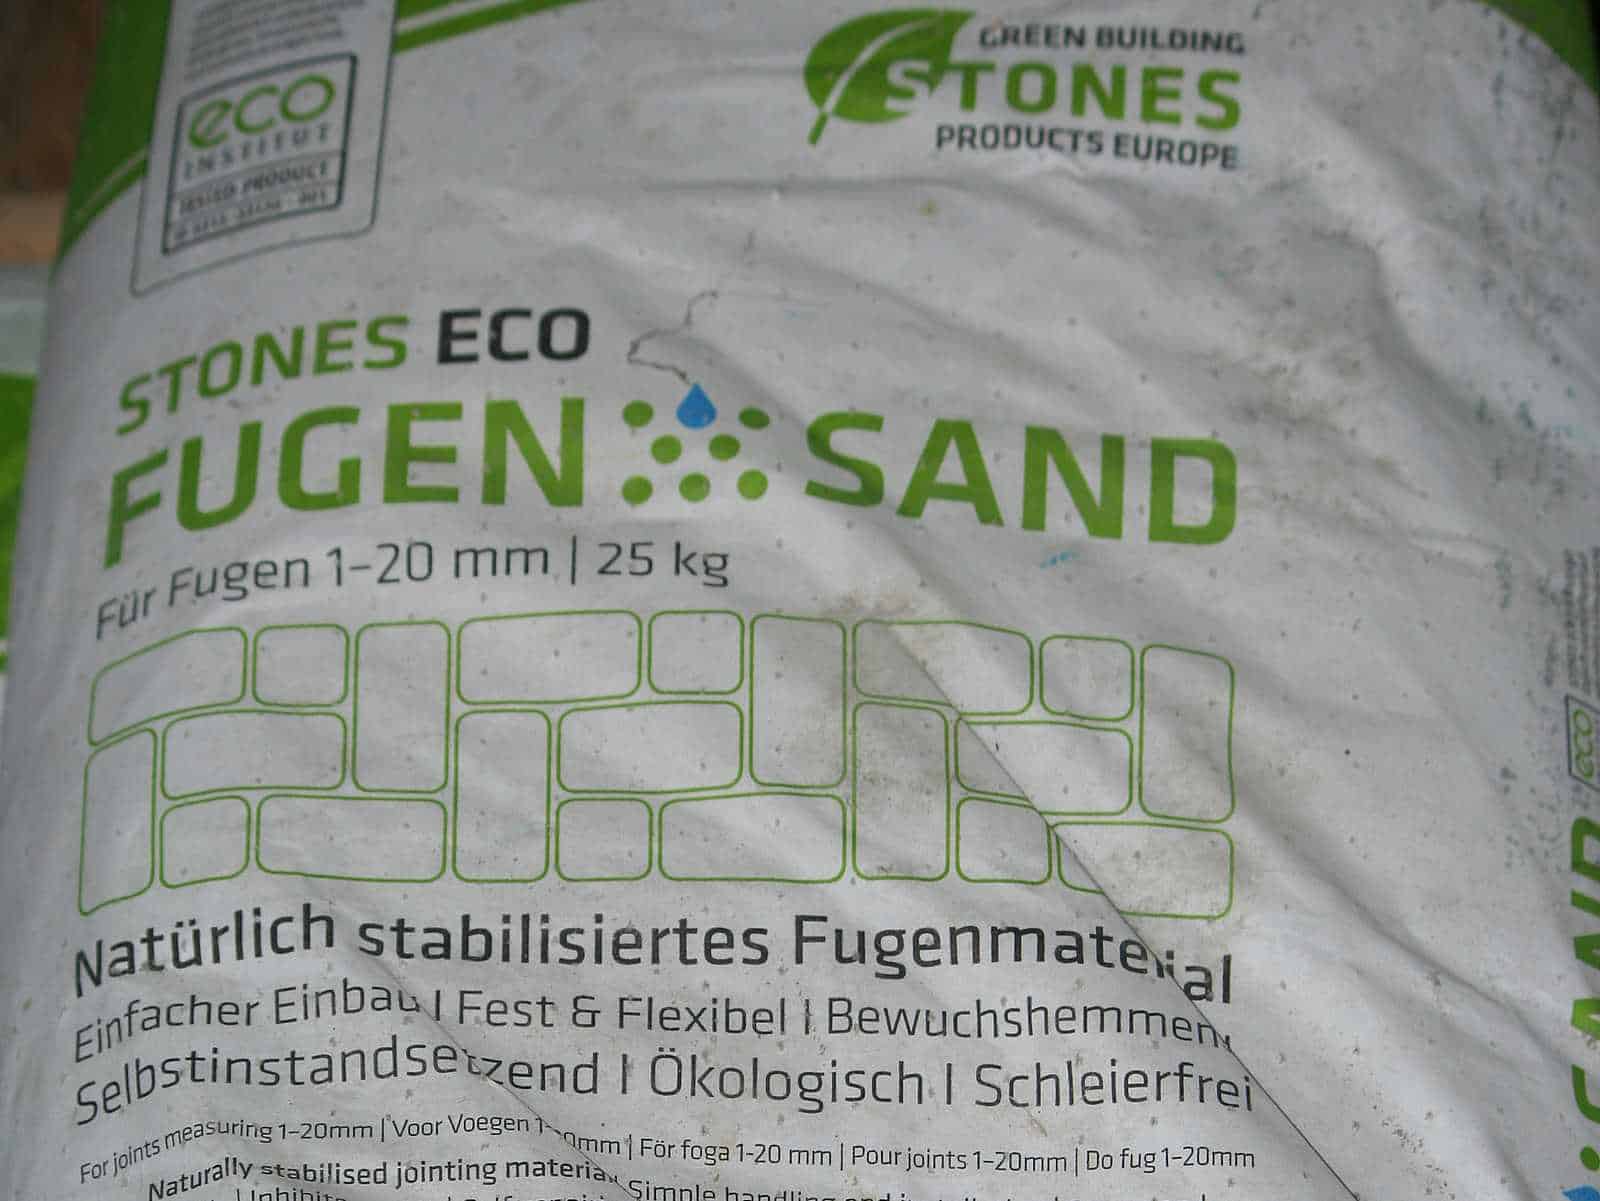 ECO Stones Fugensand